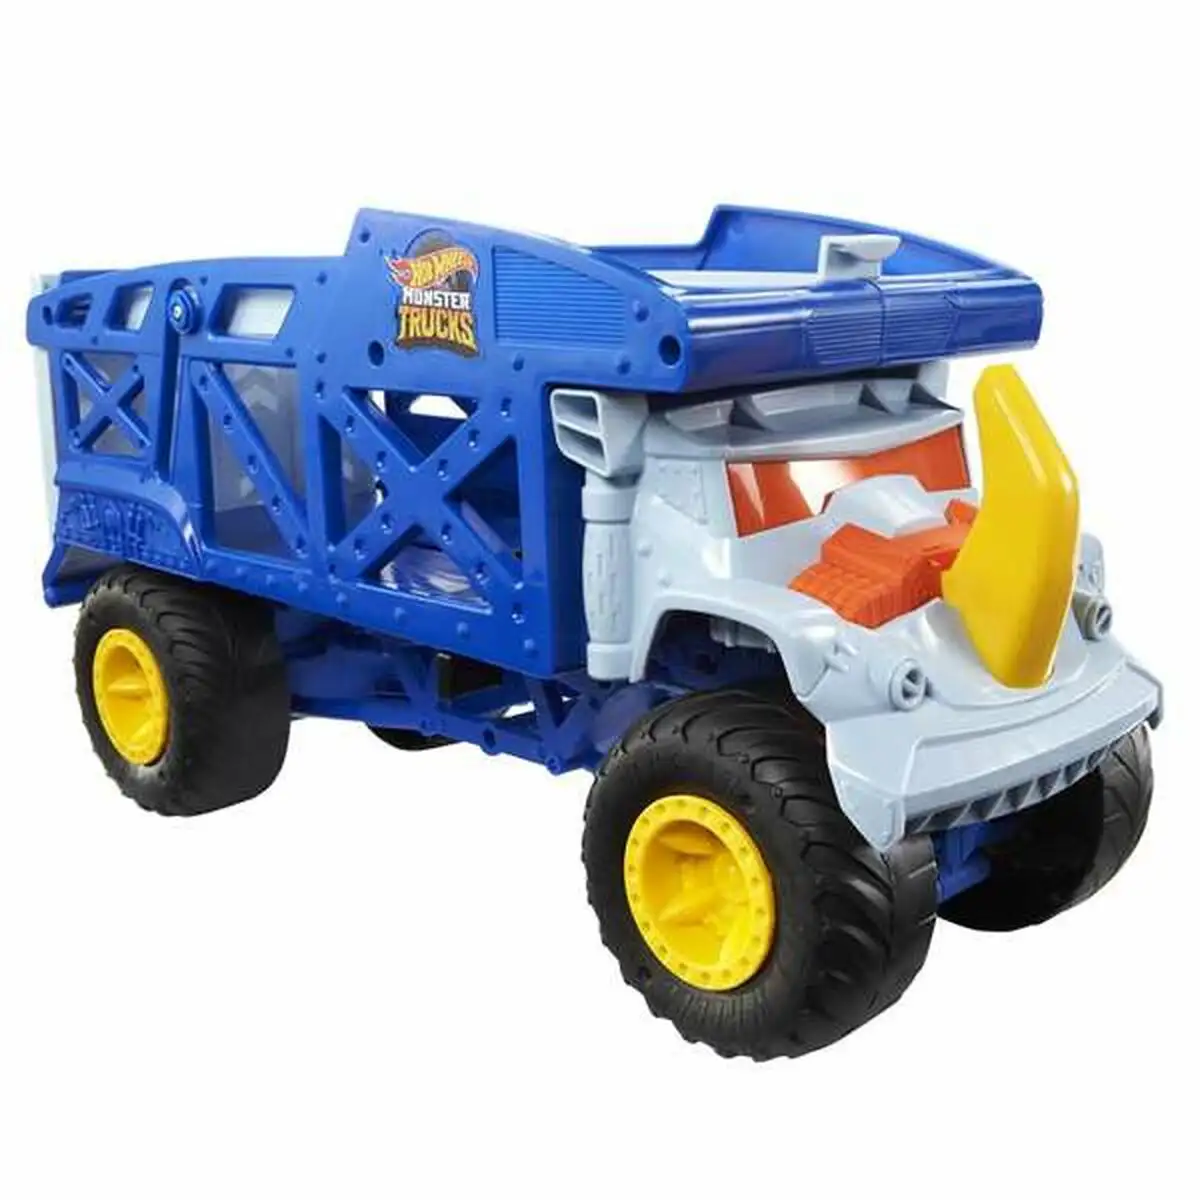 Camion hot wheels monster trucks rhino 1 64_5775. DIAYTAR SENEGAL - Votre Portail Vers l'Exclusivité. Explorez notre boutique en ligne pour découvrir des produits uniques et raffinés, conçus pour ceux qui recherchent l'excellence.